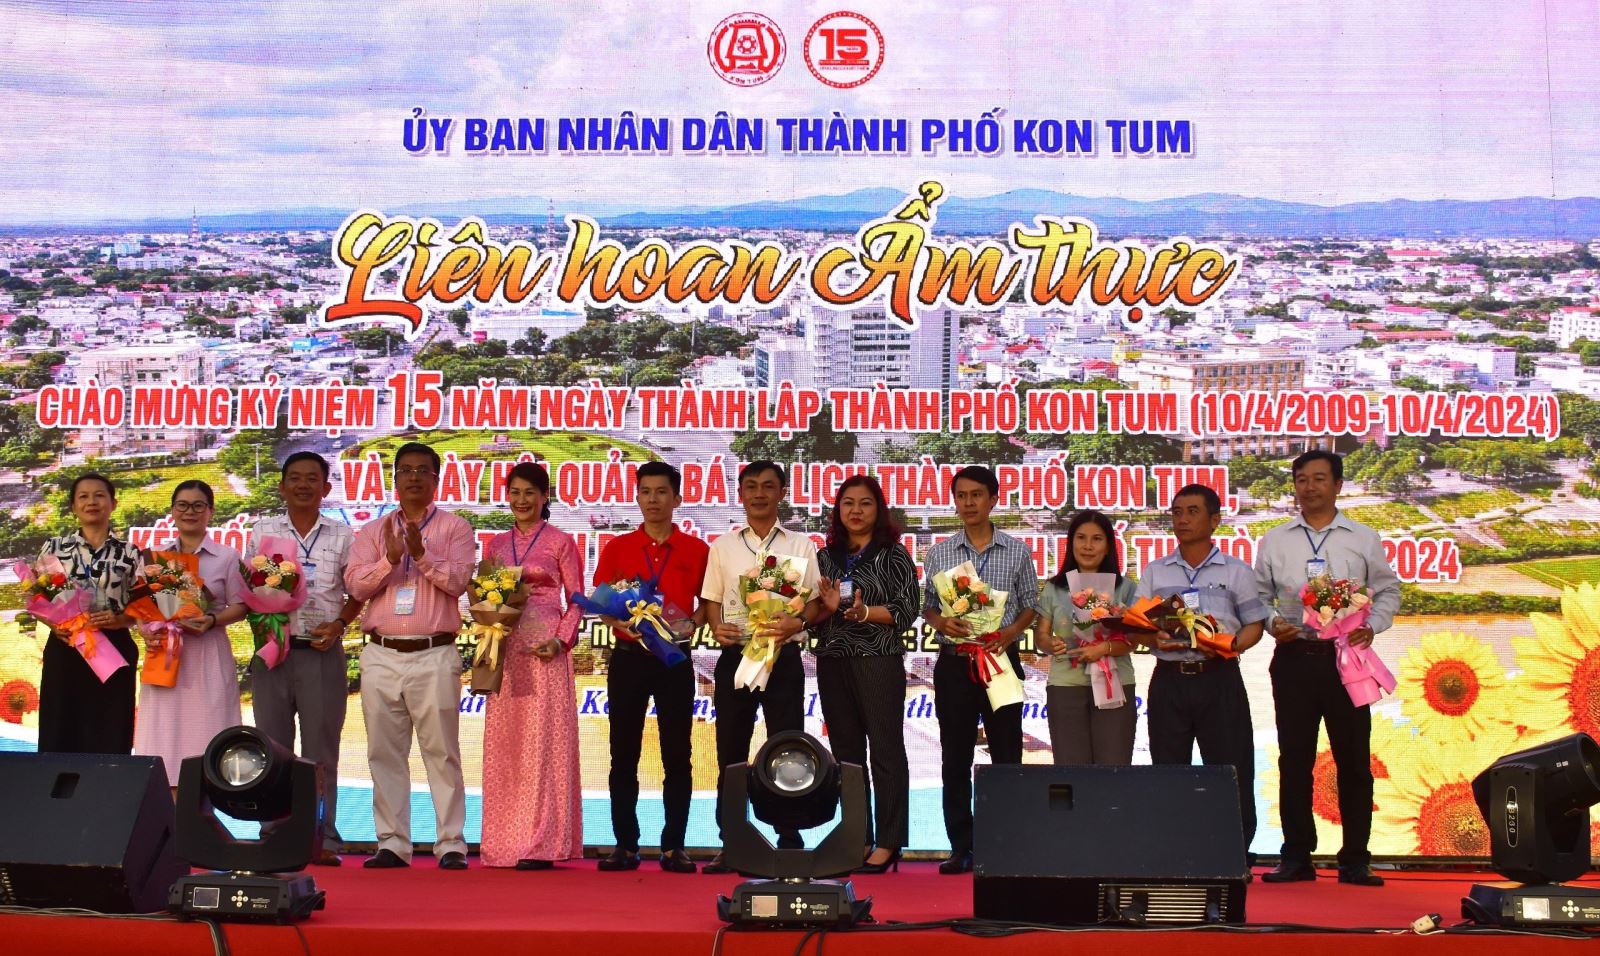 Khai mạc Liên hoan ẩm thực chào mừng kỷ niệm 15 năm thành lập thành phố Kon Tum